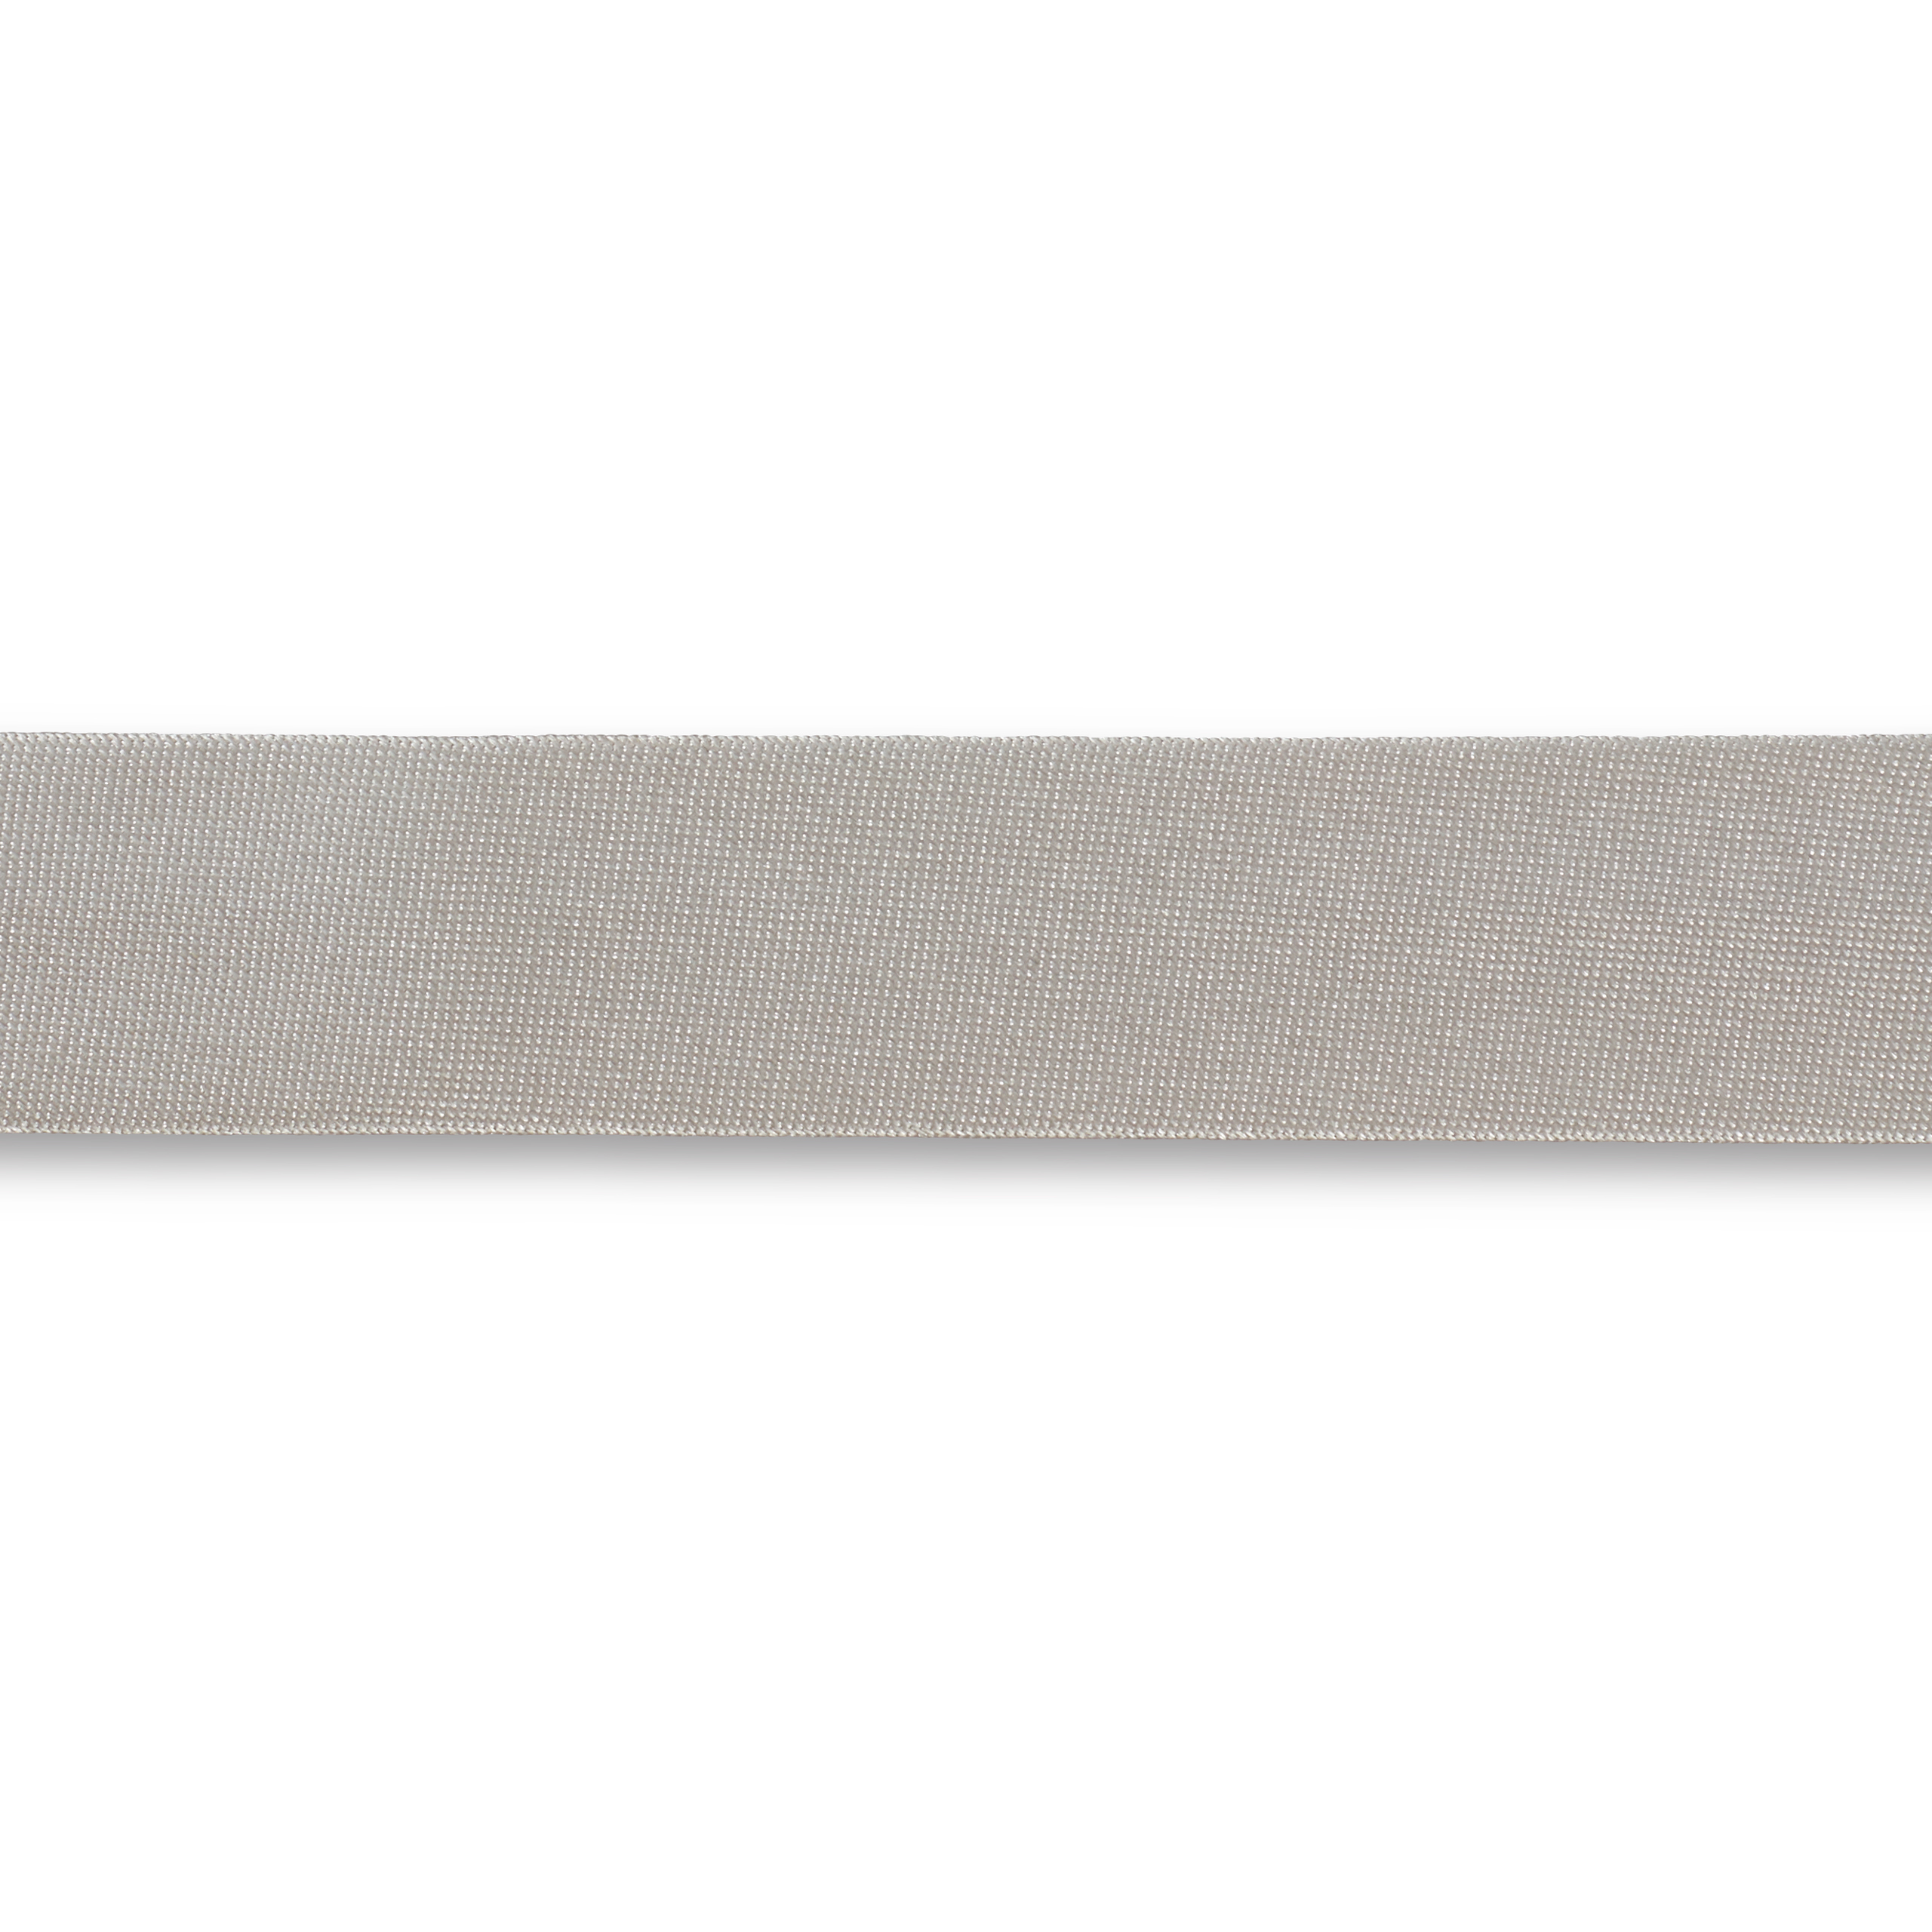 Schrägband Duchesse 40/20 mm silbergrau, Meterware, Einfassband, Satin-Schrägband 